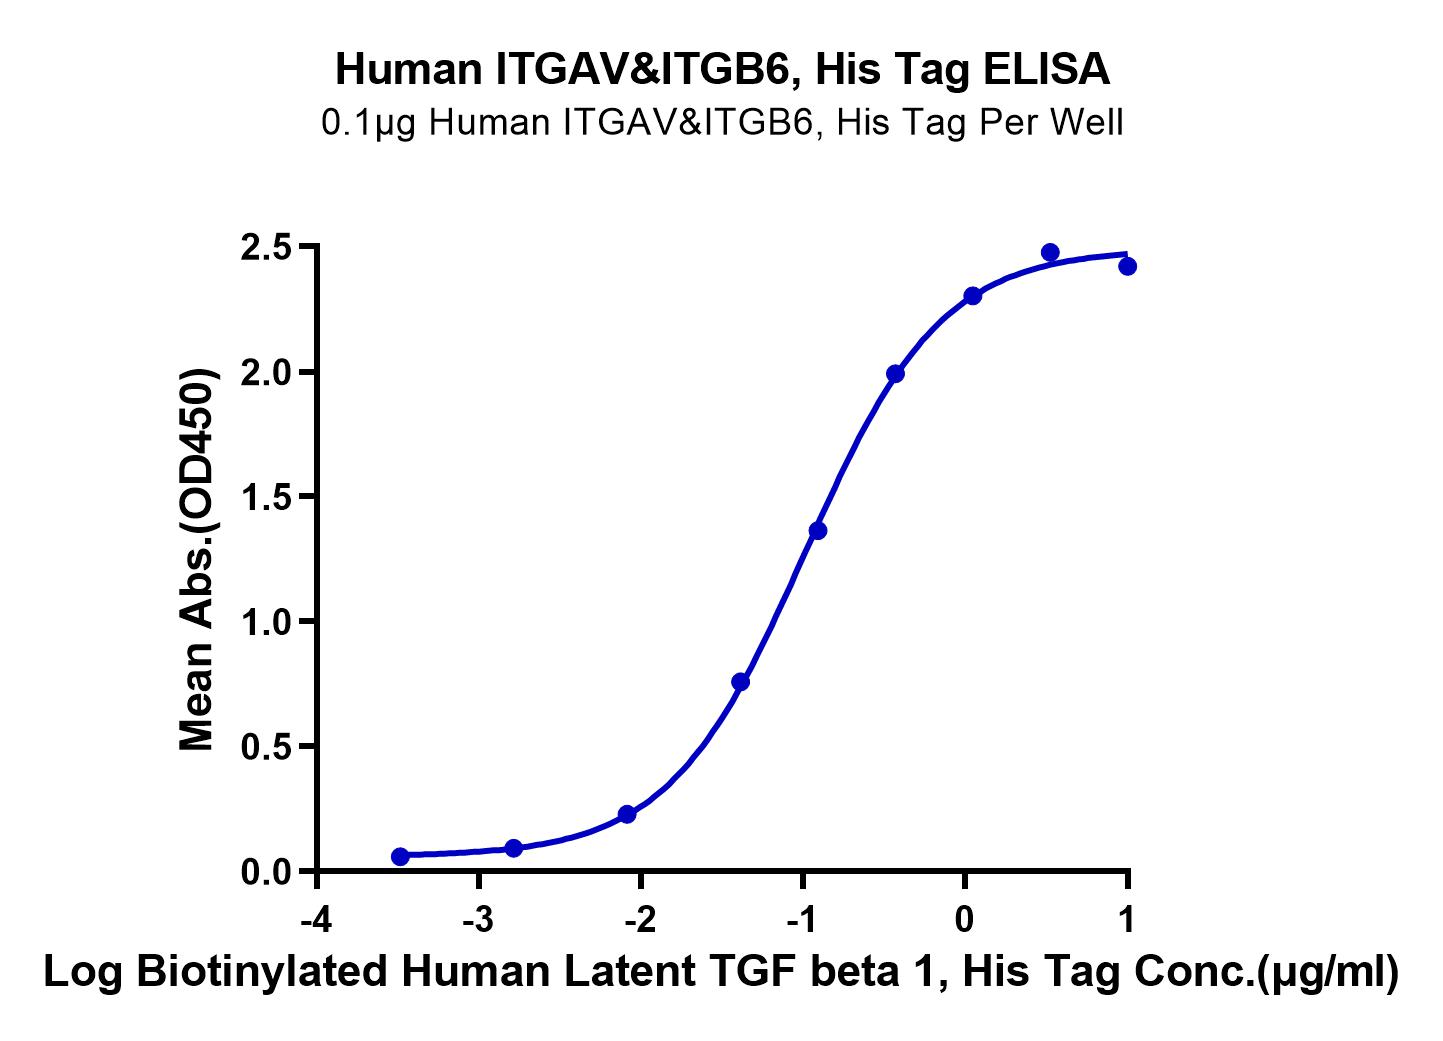 Human Integrin alpha V beta 6 (ITGAV&ITGB6) Heterodimer Protein (LTP10718)